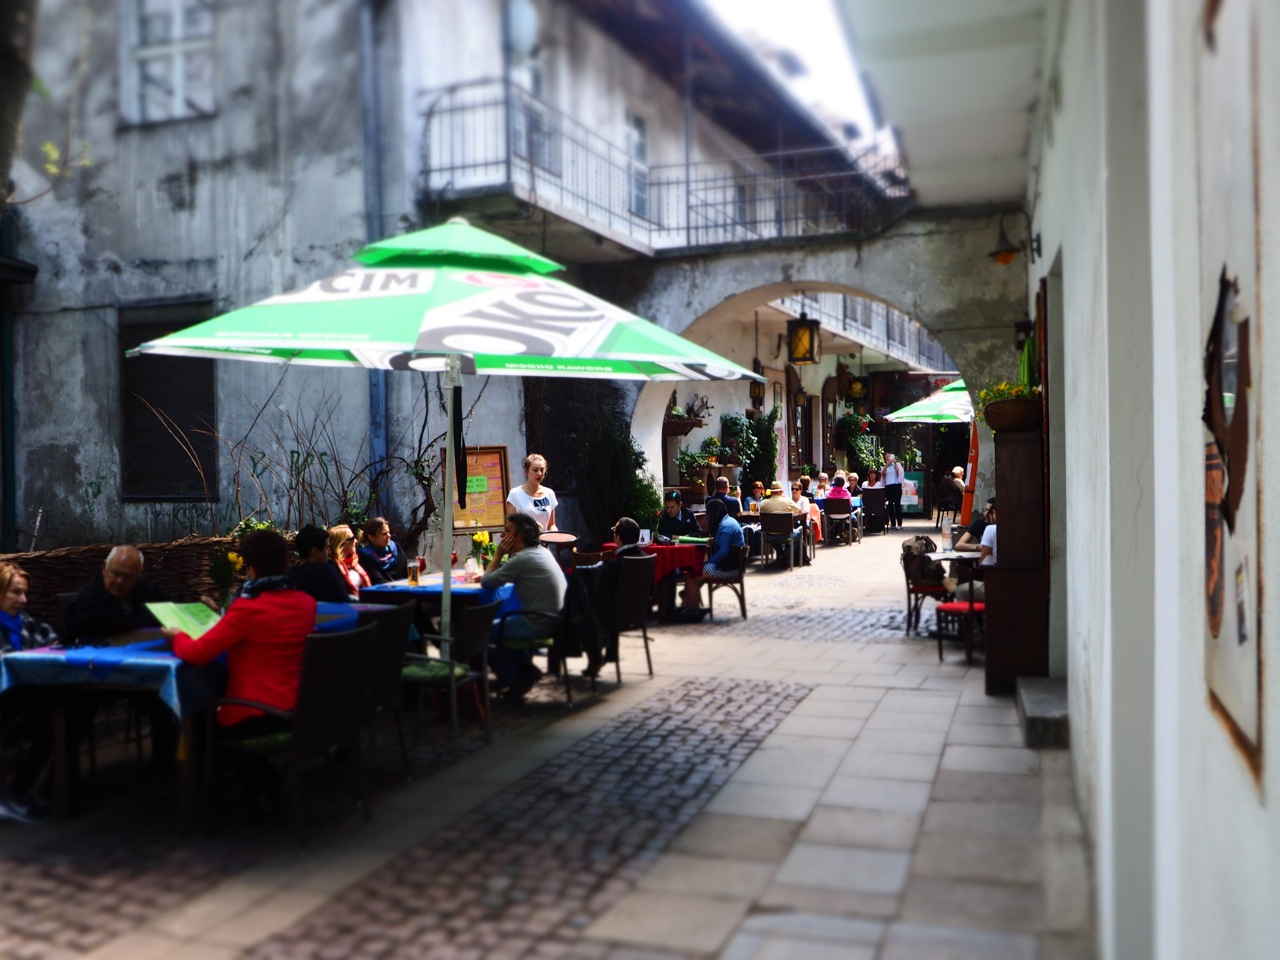 Popular Stajnia cafe in the old Jewish Quarter in Krakow, Kazimierz district. Image: Alison Binney